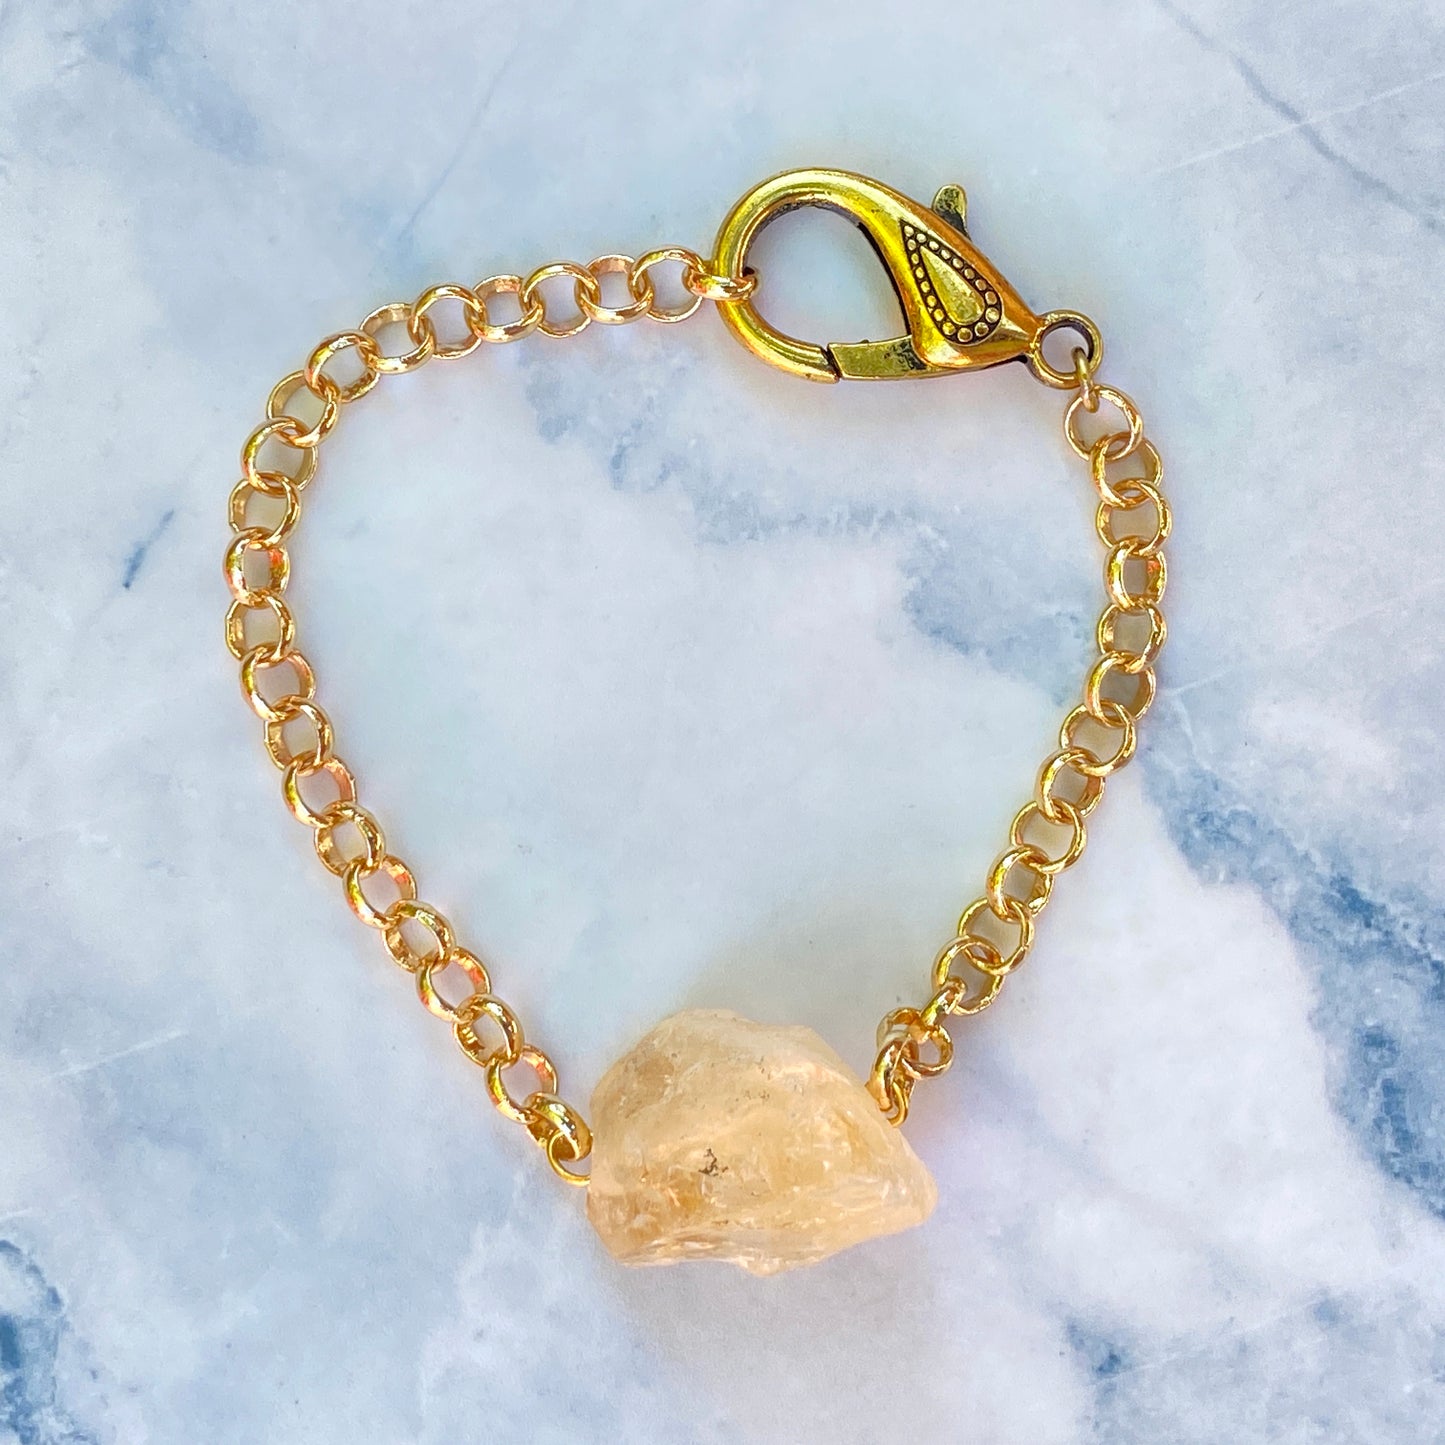 Raw Citrine gemstone and Brass chain clasp Bracelet